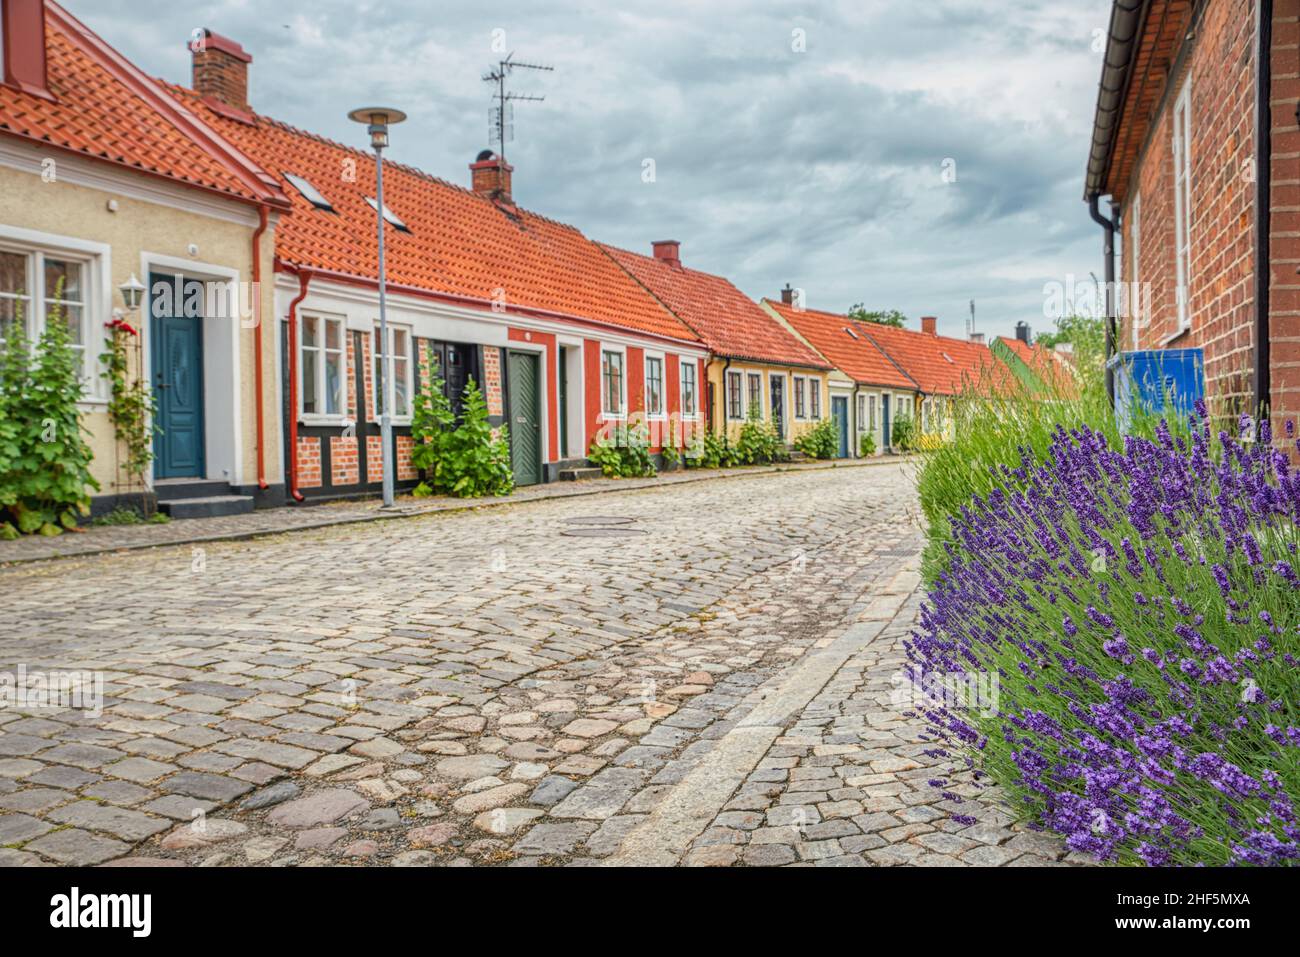 Simrishamn, storico villaggio di pescatori in Svezia con stree acciottolate, fiori di lavanda viola da una fila di case della città vecchia nella regione svedese di Osterlen Foto Stock